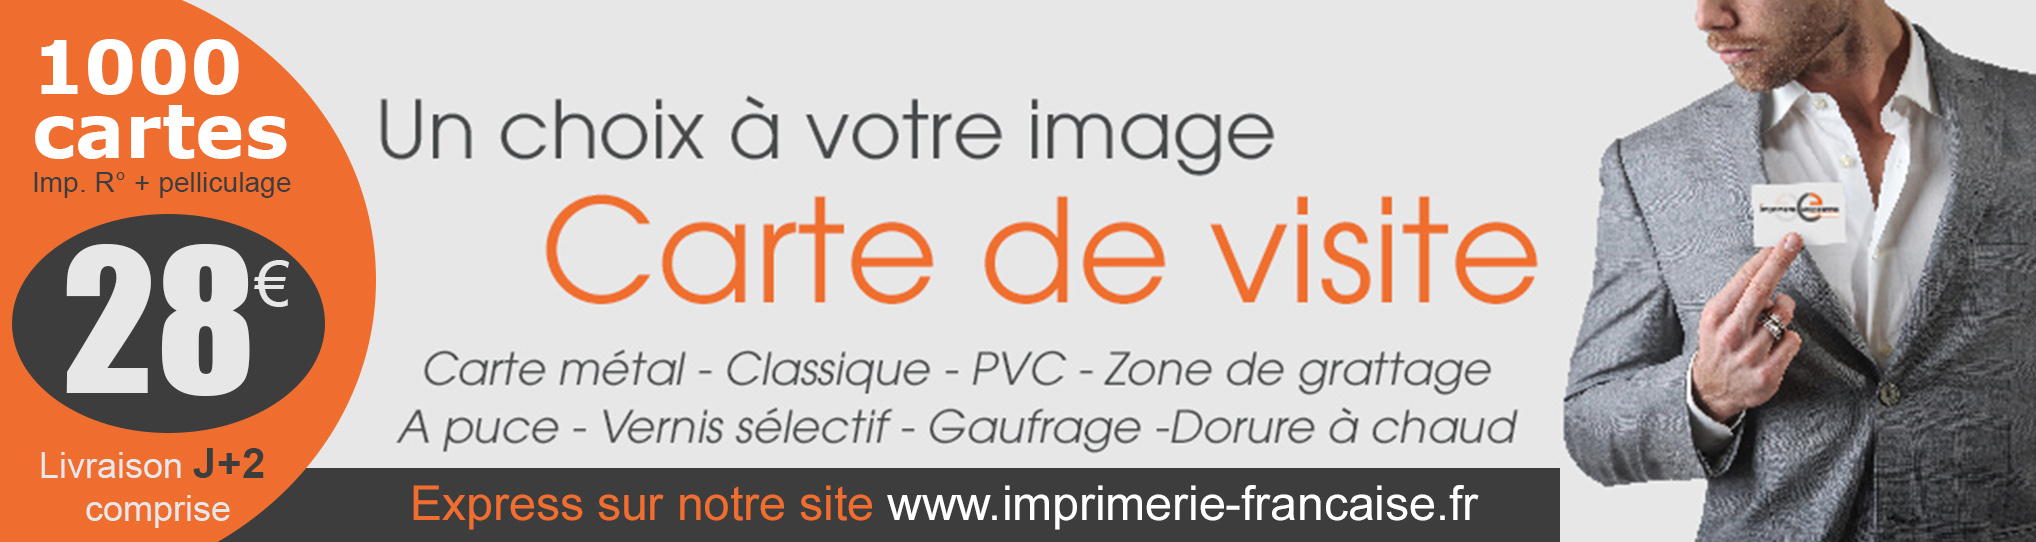 commander vos cartes de visite sur www.imprimerie-francaise.fr